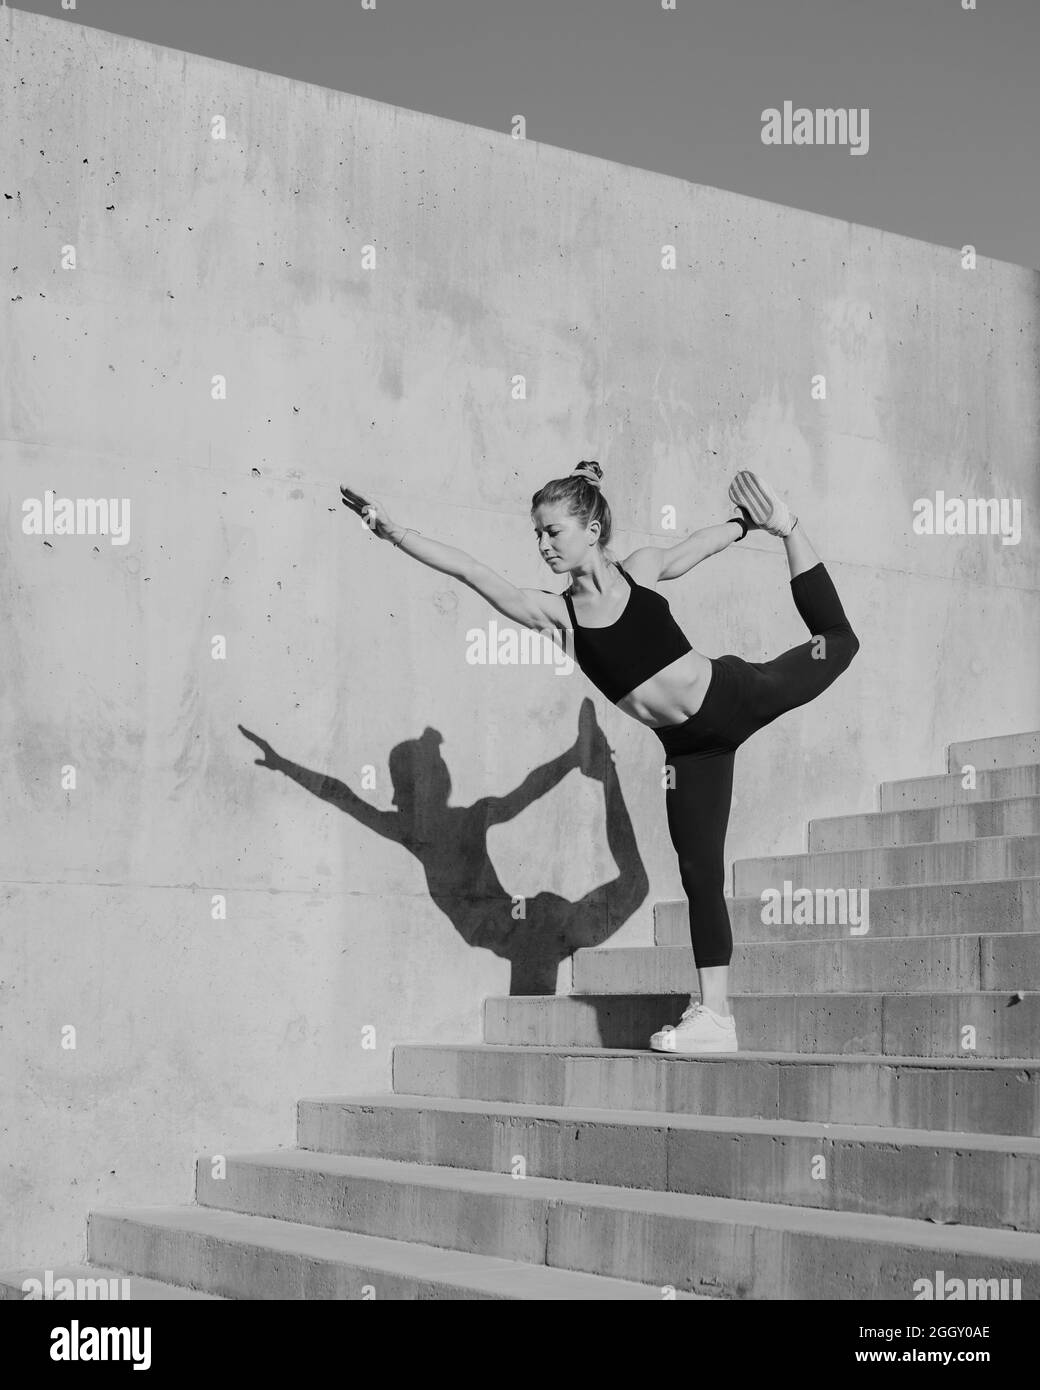 Immagine in bianco e nero di Fit giovane donna che fa Yoga Dancer posa in Urban, ambiente moderno Foto Stock